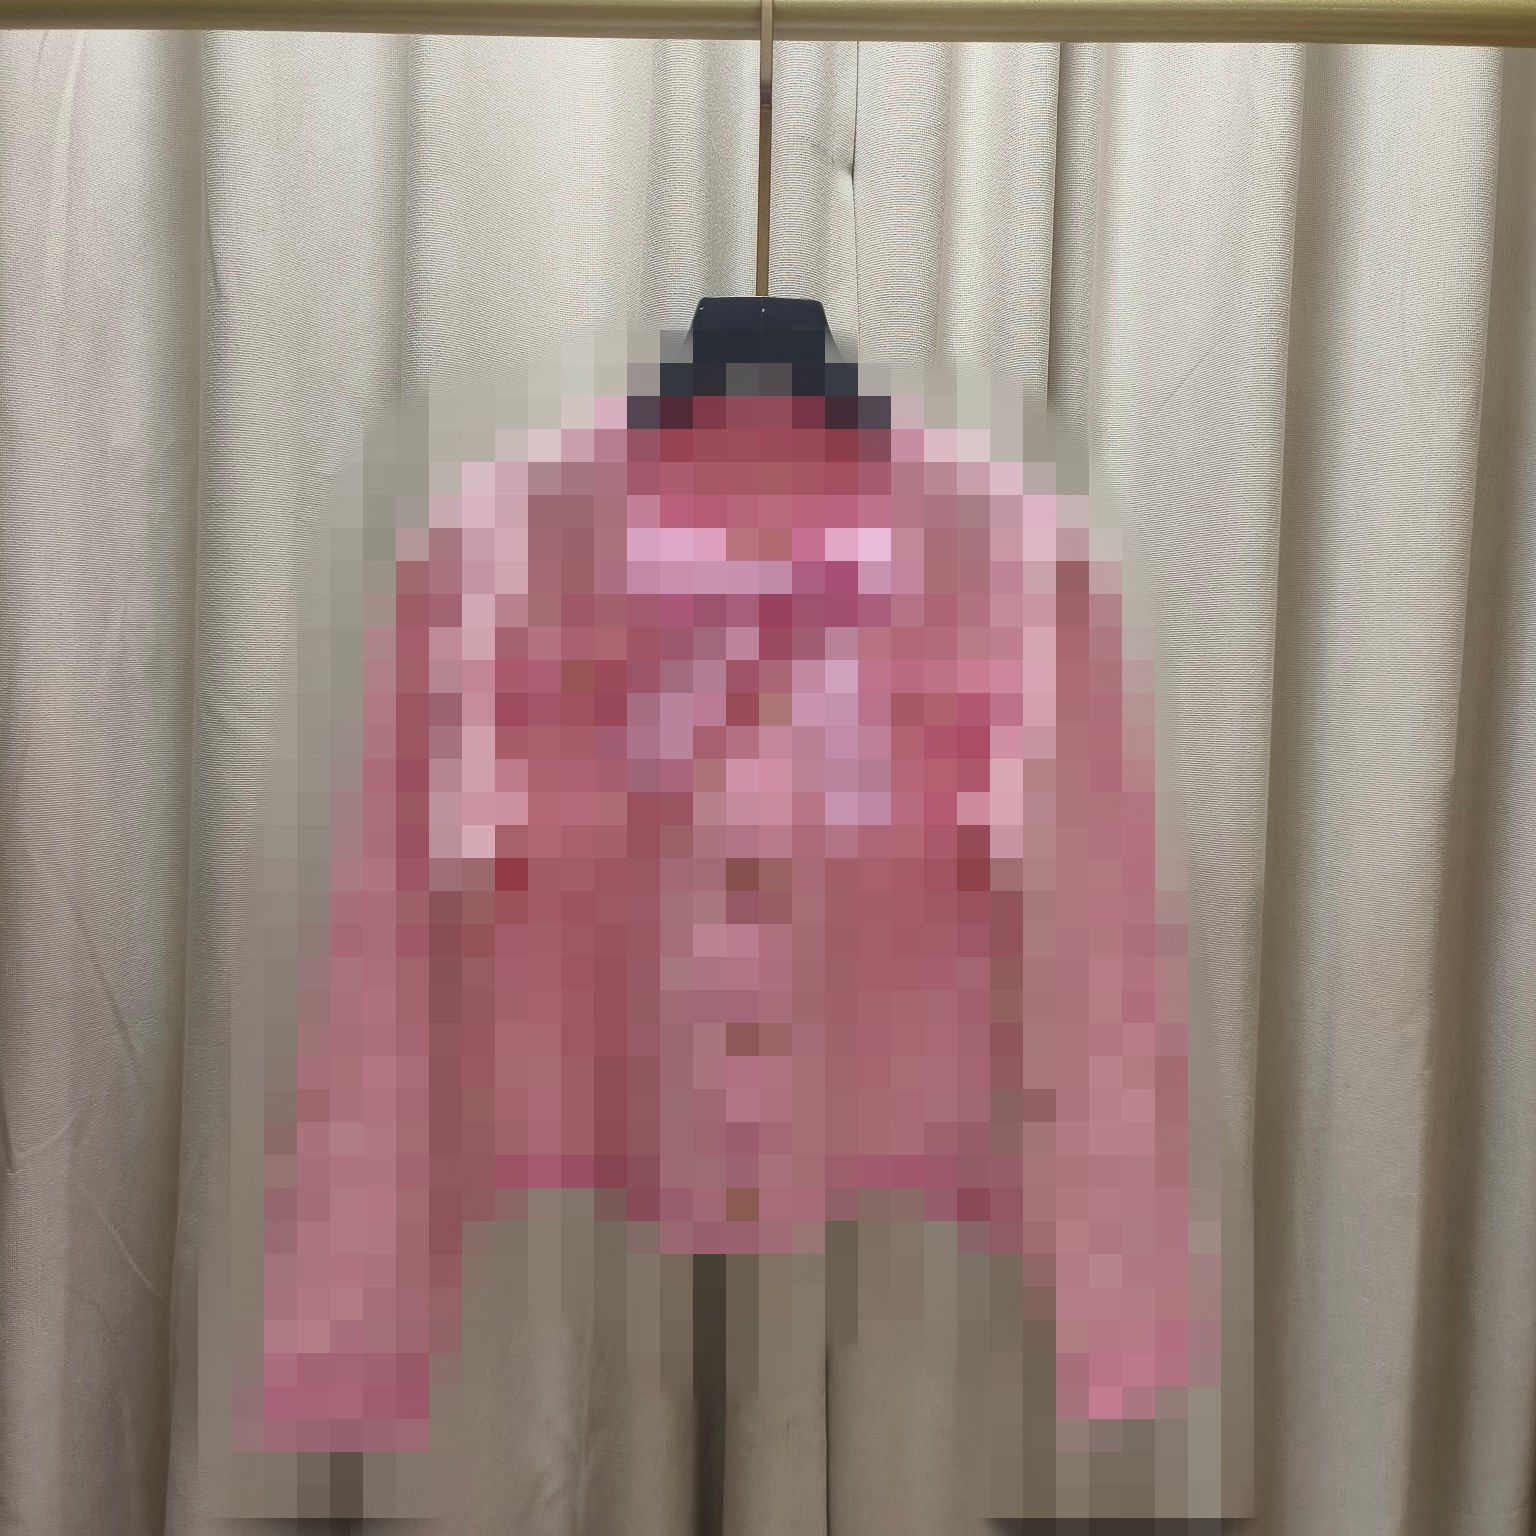 Bezpłatna wysyłka światło Tan/Pink Bow Letter Drukuj damski kardigan marka w tym samym stylu Swetery damskie DH57